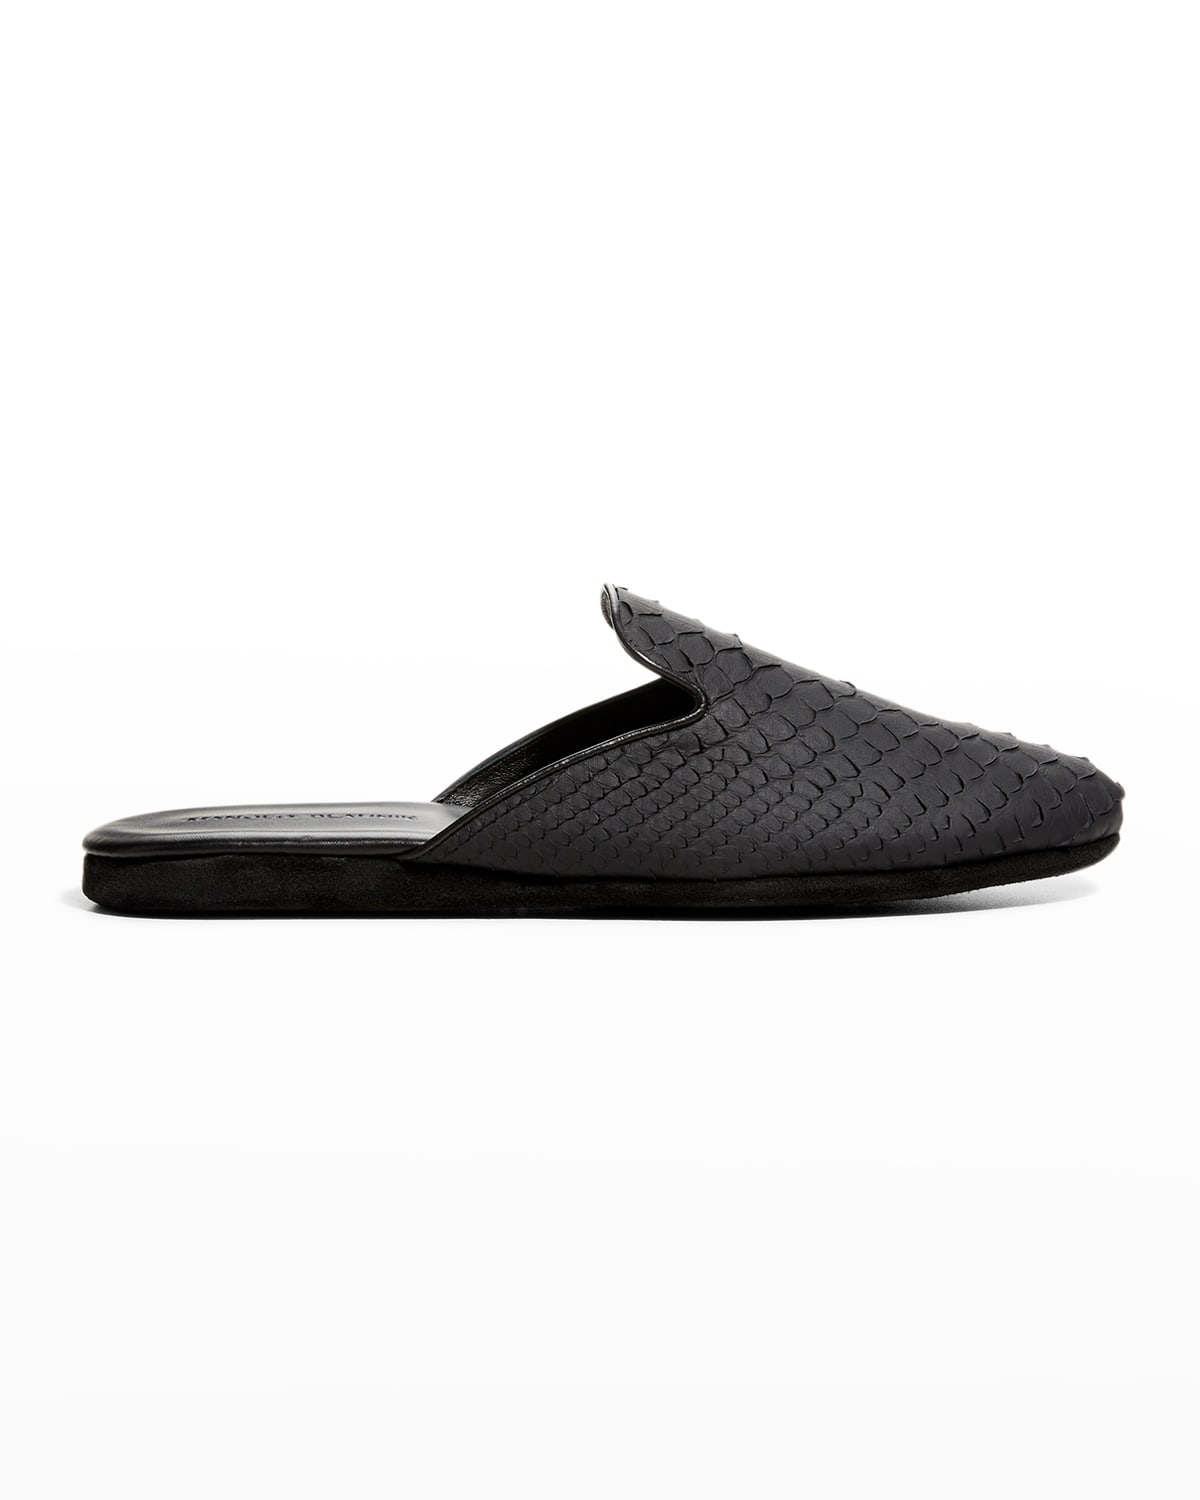 MANOLO BLAHNIK Shoes for Men | ModeSens